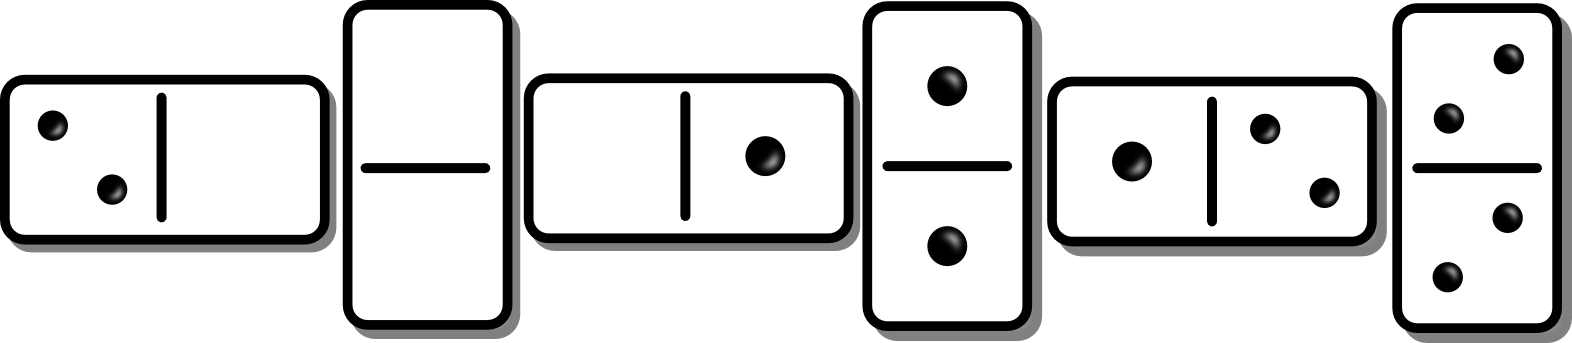 domino clipart variation